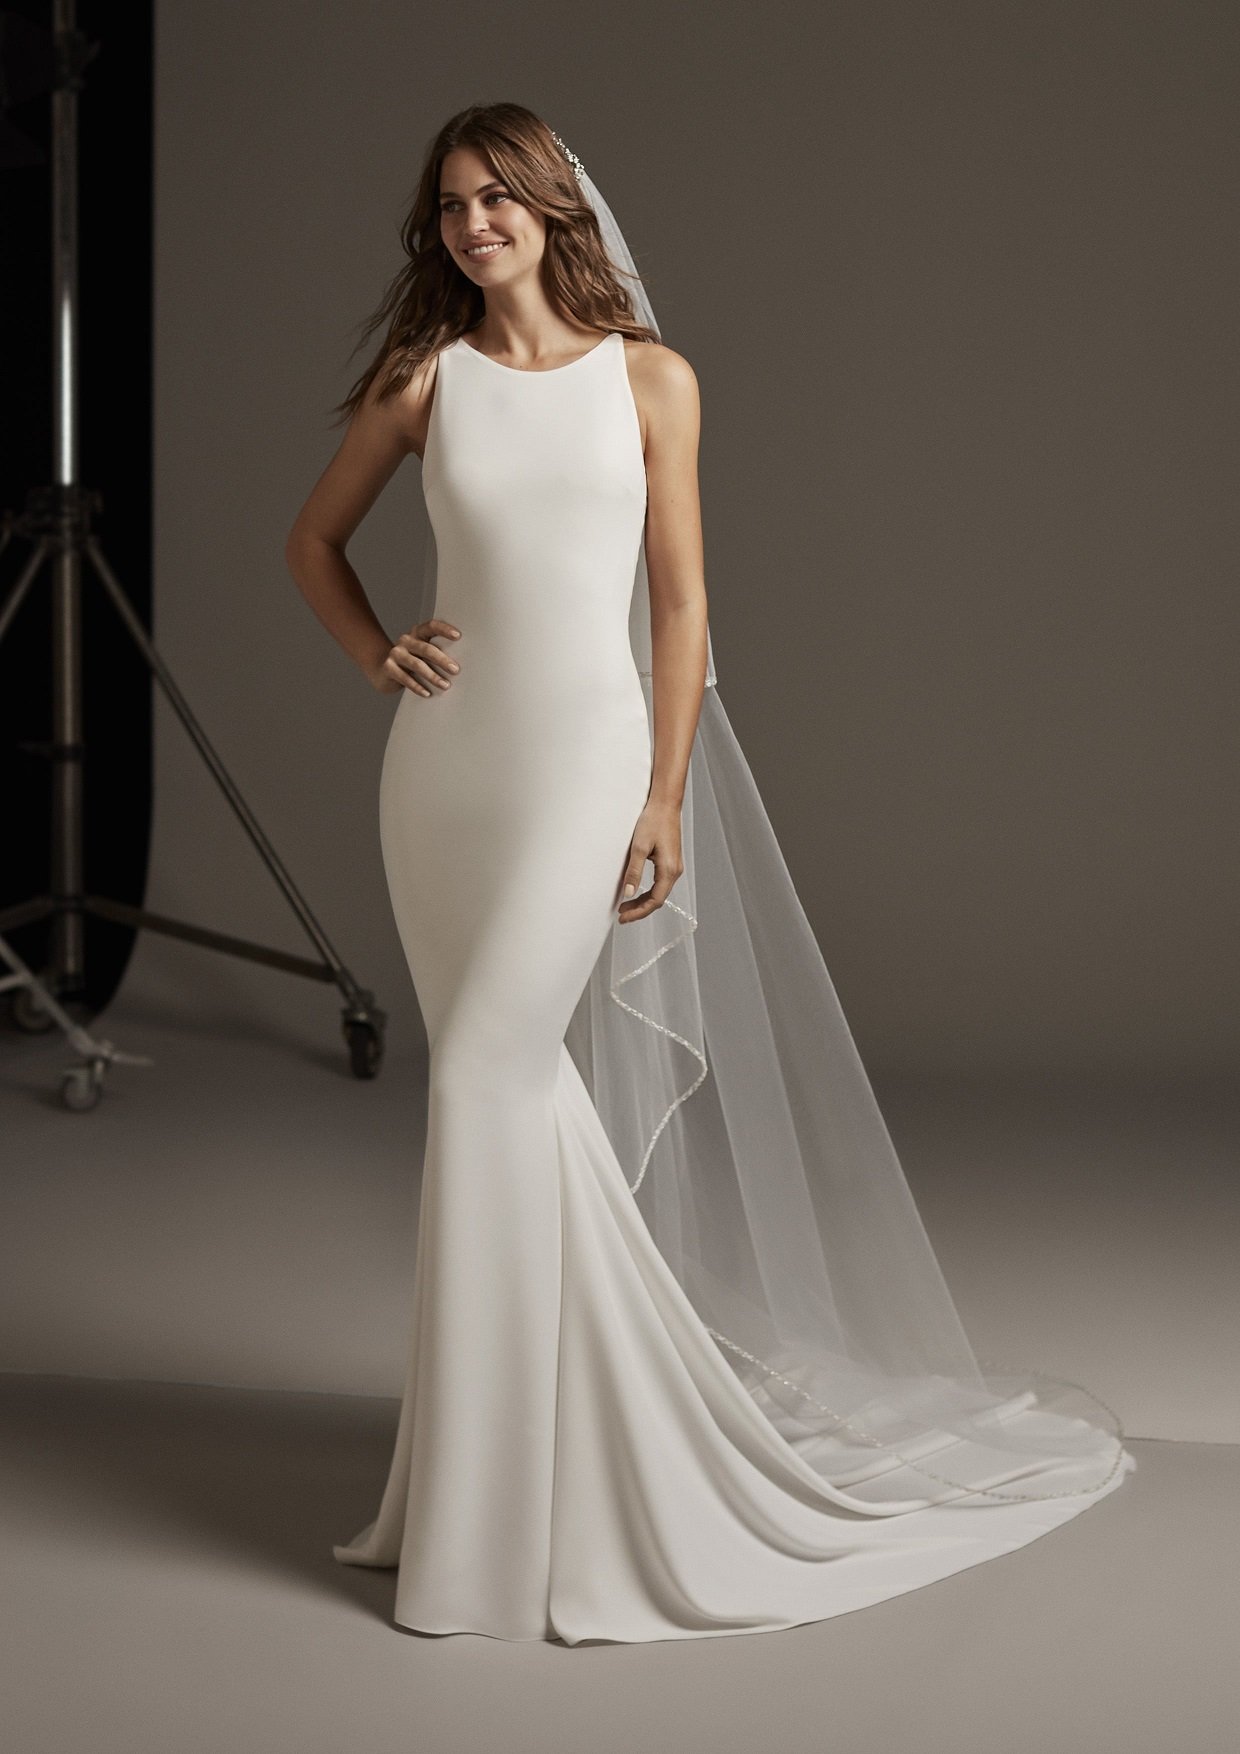 Elegant Mermaid Wedding Gown With Halter Neckline Modes Bridal Nz